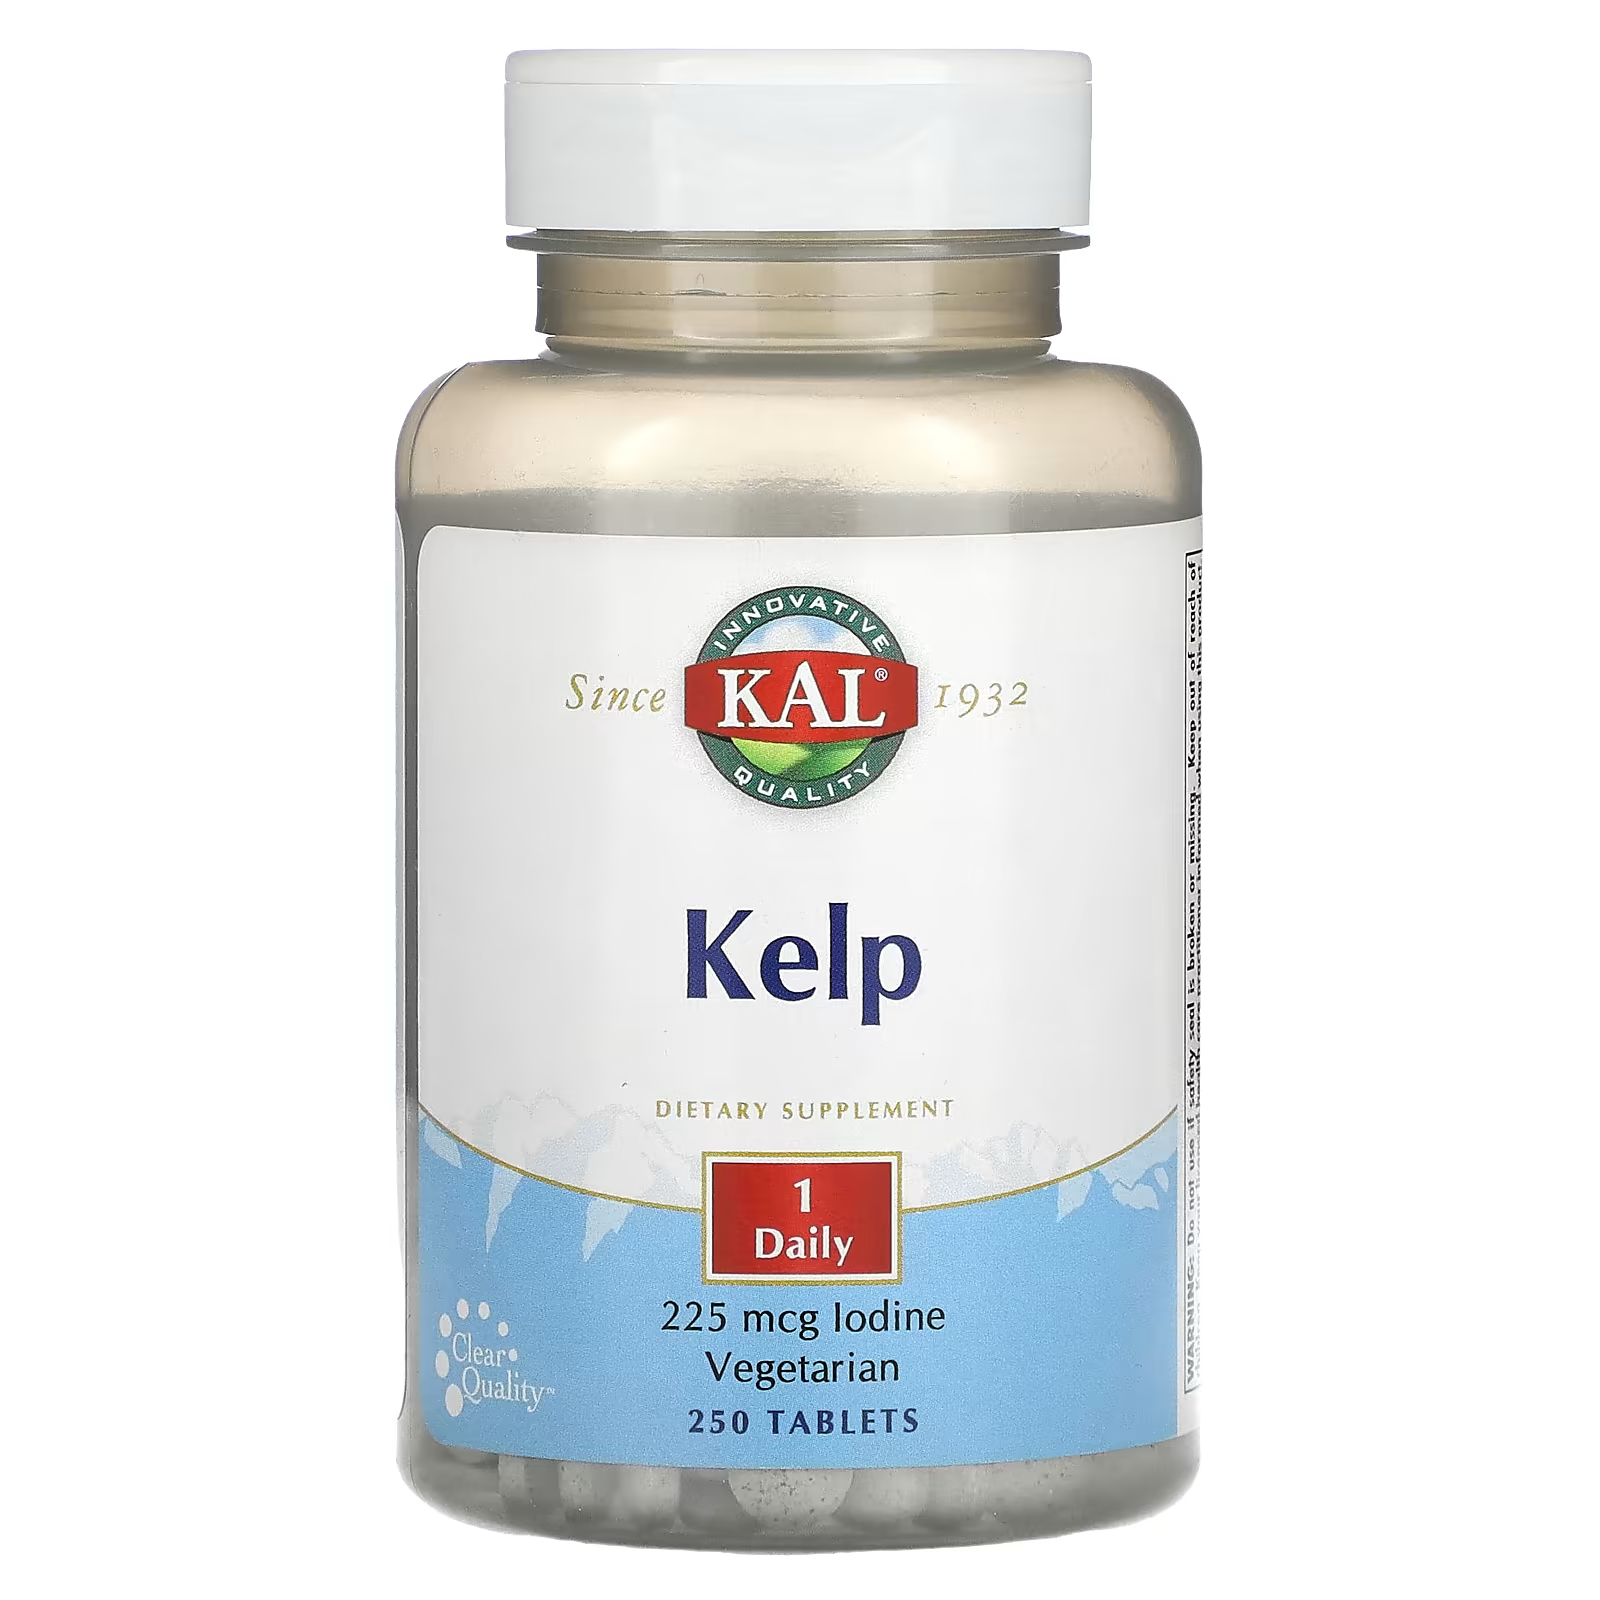 Пищевая добавка Kal келп, 250 таблеток пищевая добавка kal кальций магний цинк 250 таблеток